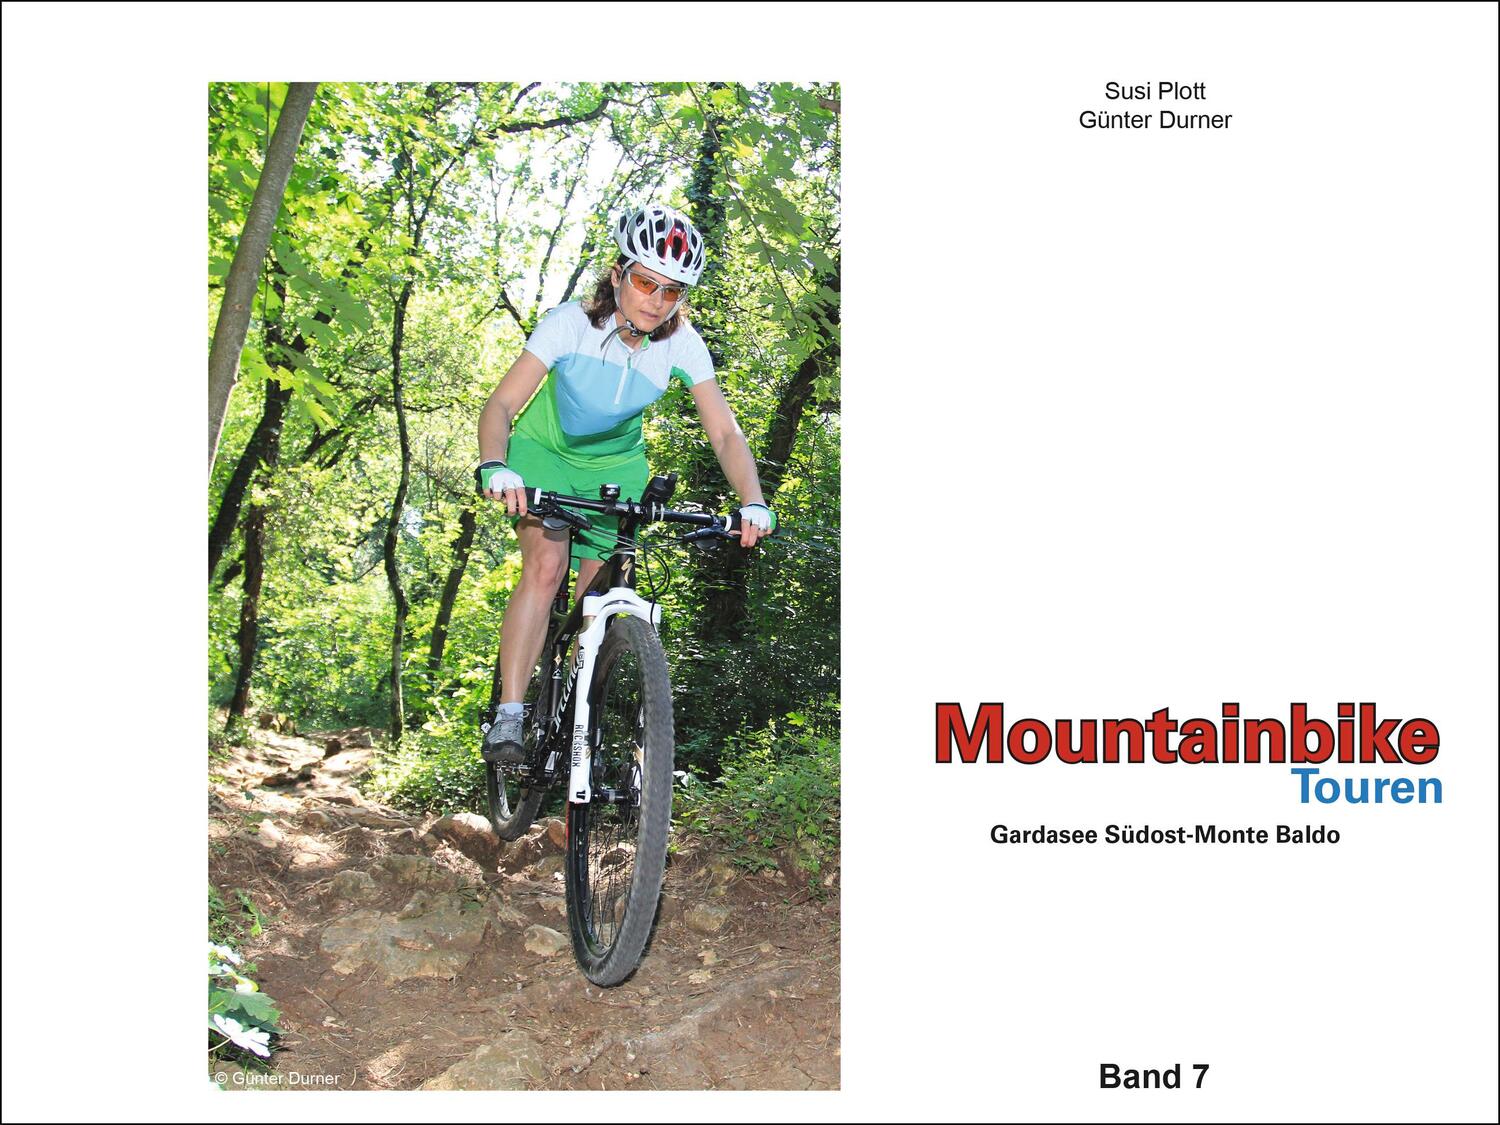 Bild: 9783981567137 | Mountainbike Touren Gardasee Südost - Monte Baldo | Band 7 | Buch